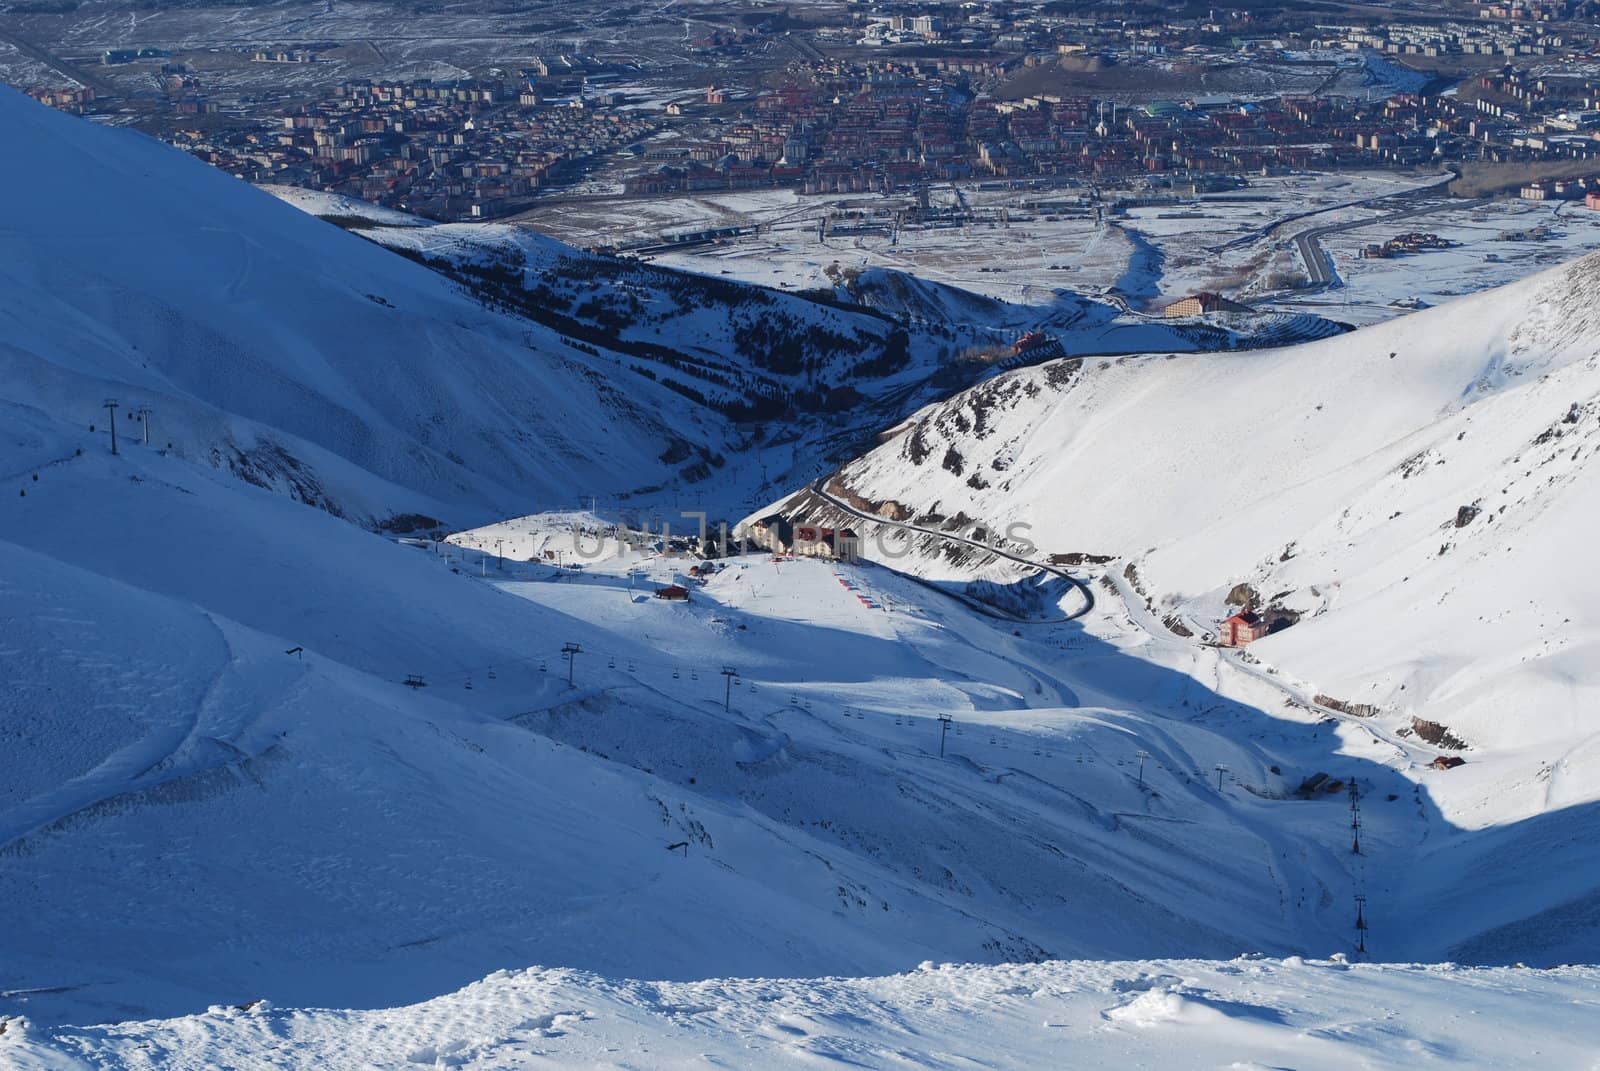 ski resort and  snow mountains in Turkey Palandoken Erzurum